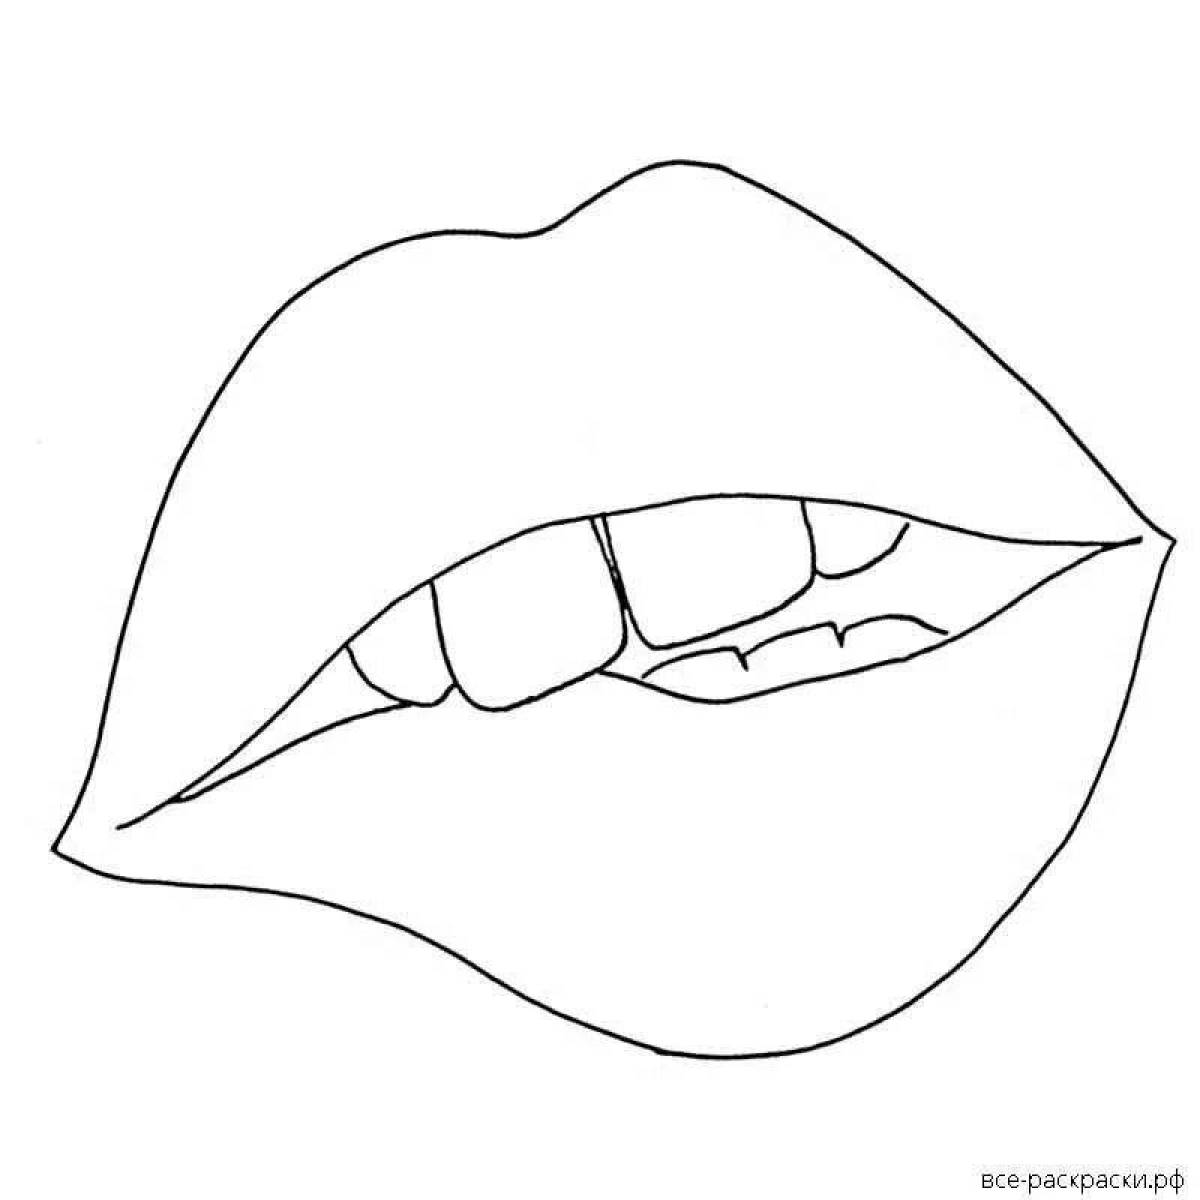 Игривый рисунок губ